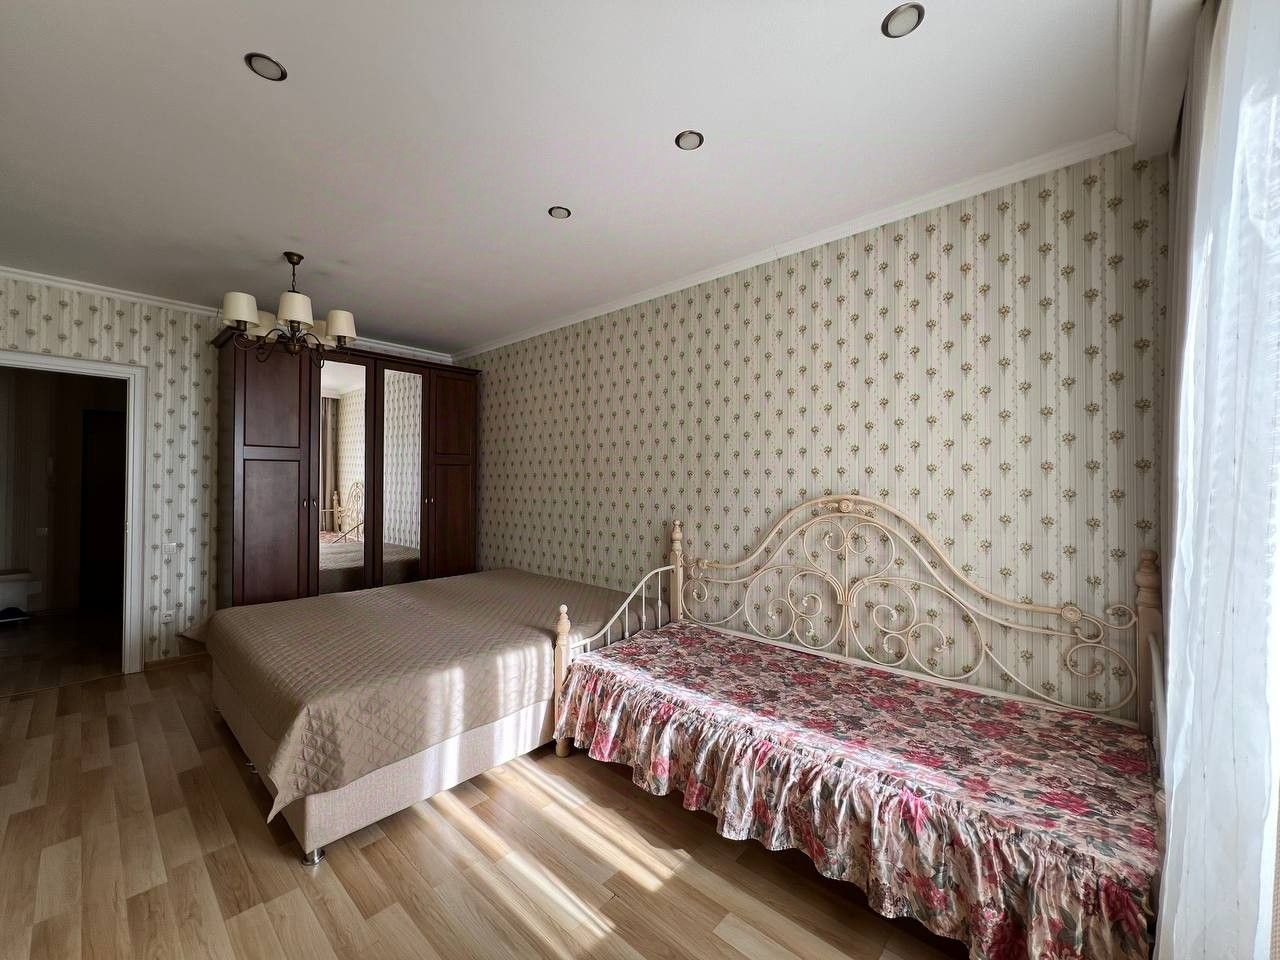 Уютная спальня с двумя кроватями, шкафом и светлыми обоями. Просторная комната с большим окном на 14 этаже в центре Екатеринбурга.